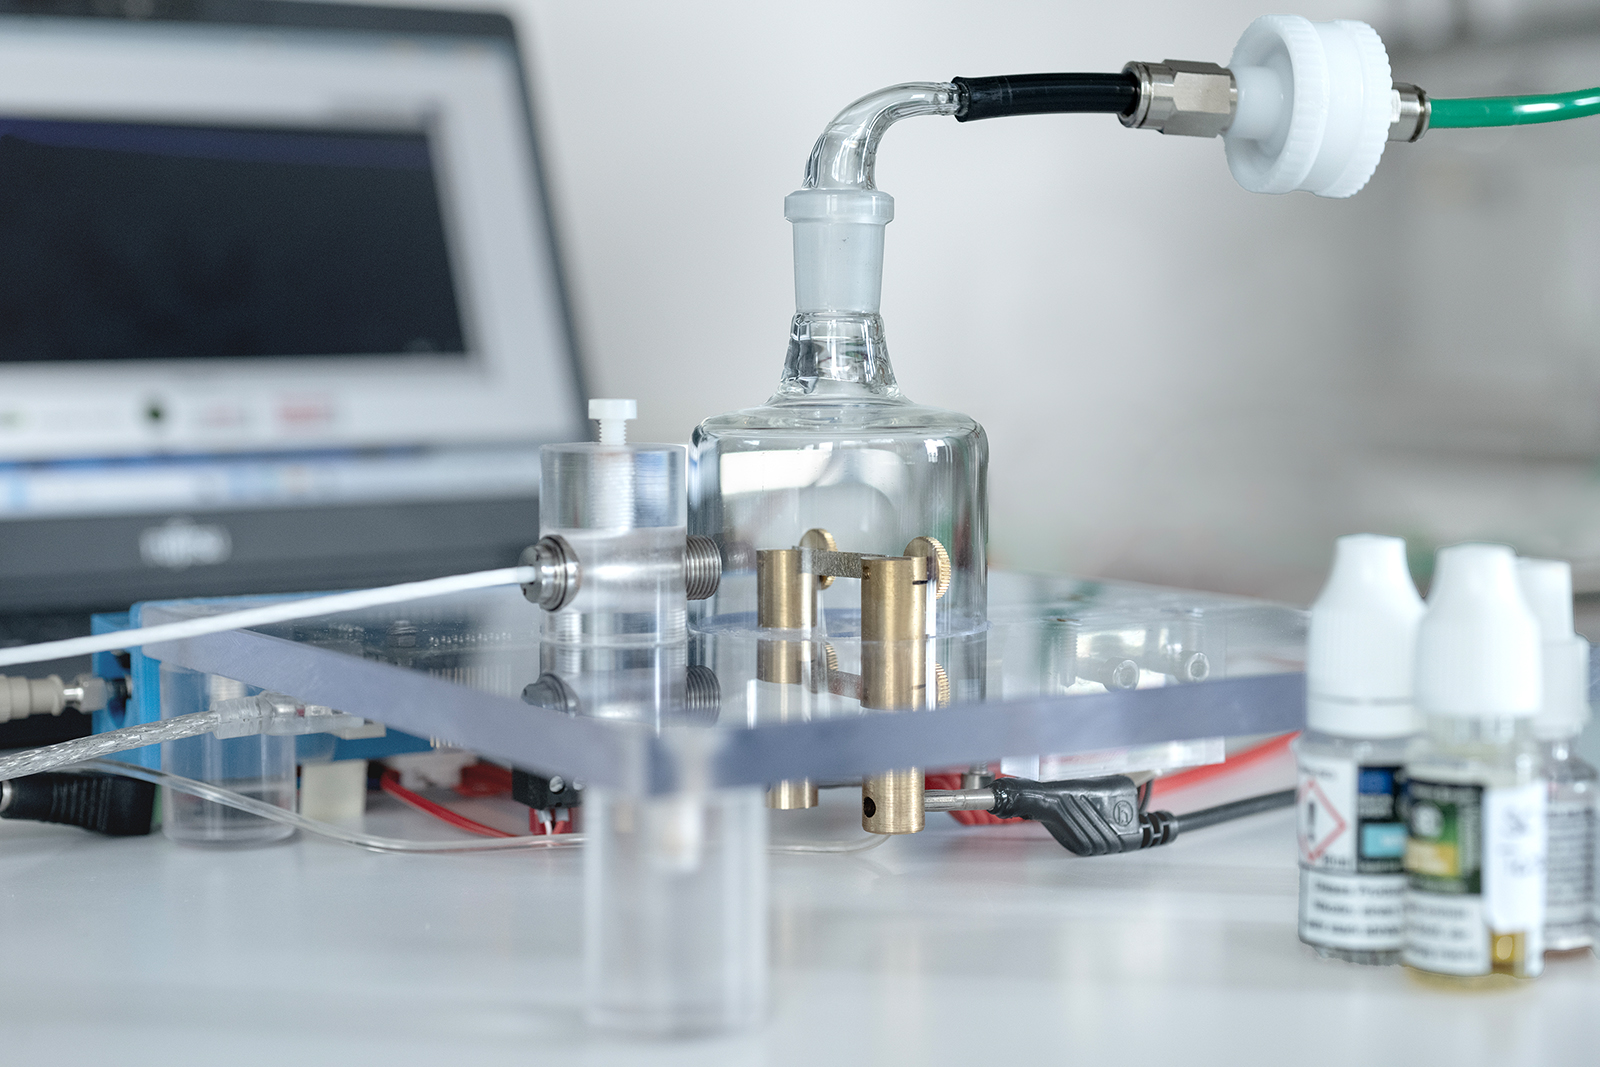 Mit dem patentierten EVape-Prototyp können die Forschenden am Fraunhofer ITEM E-Liquids kontrolliert verdampfen, um die entstehenden Emissionen zu analysieren und anschließend genau toxikologisch zu bewerten.